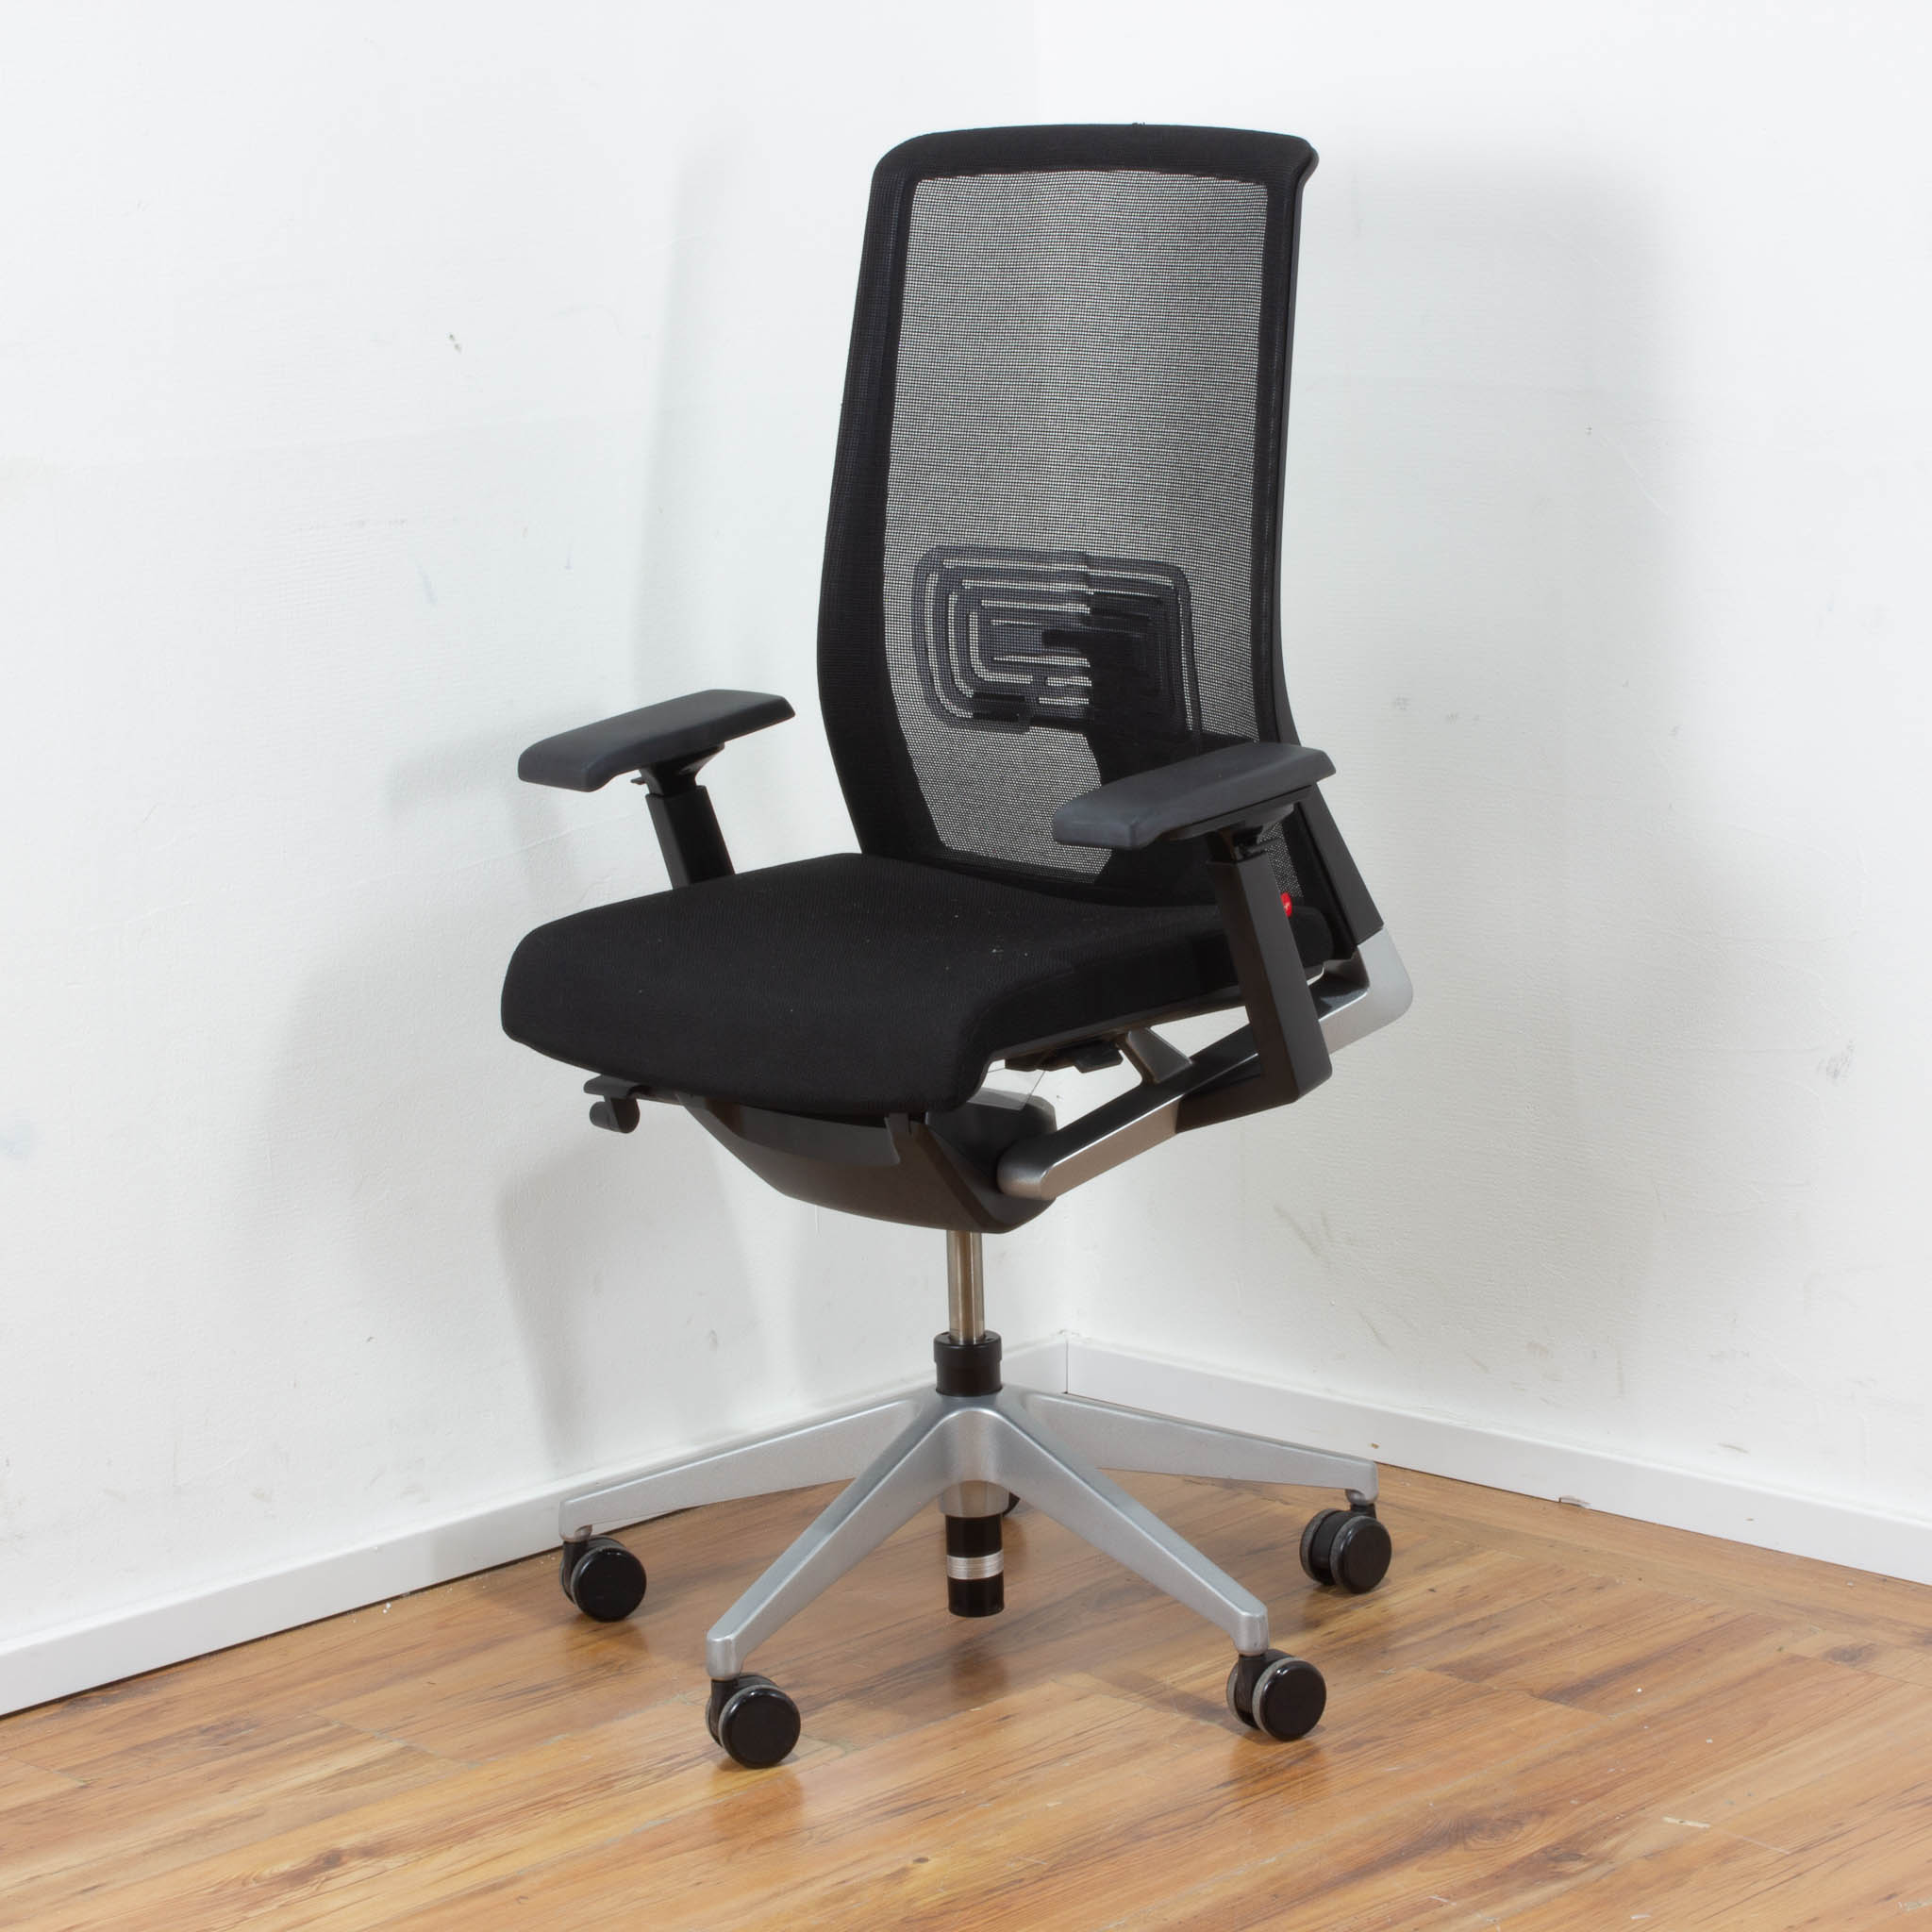 Haworth "Comforto" Bürodrehstuhl Stoff schwarz mit schwarzem Netzrücken - Gestell Aluminium silber